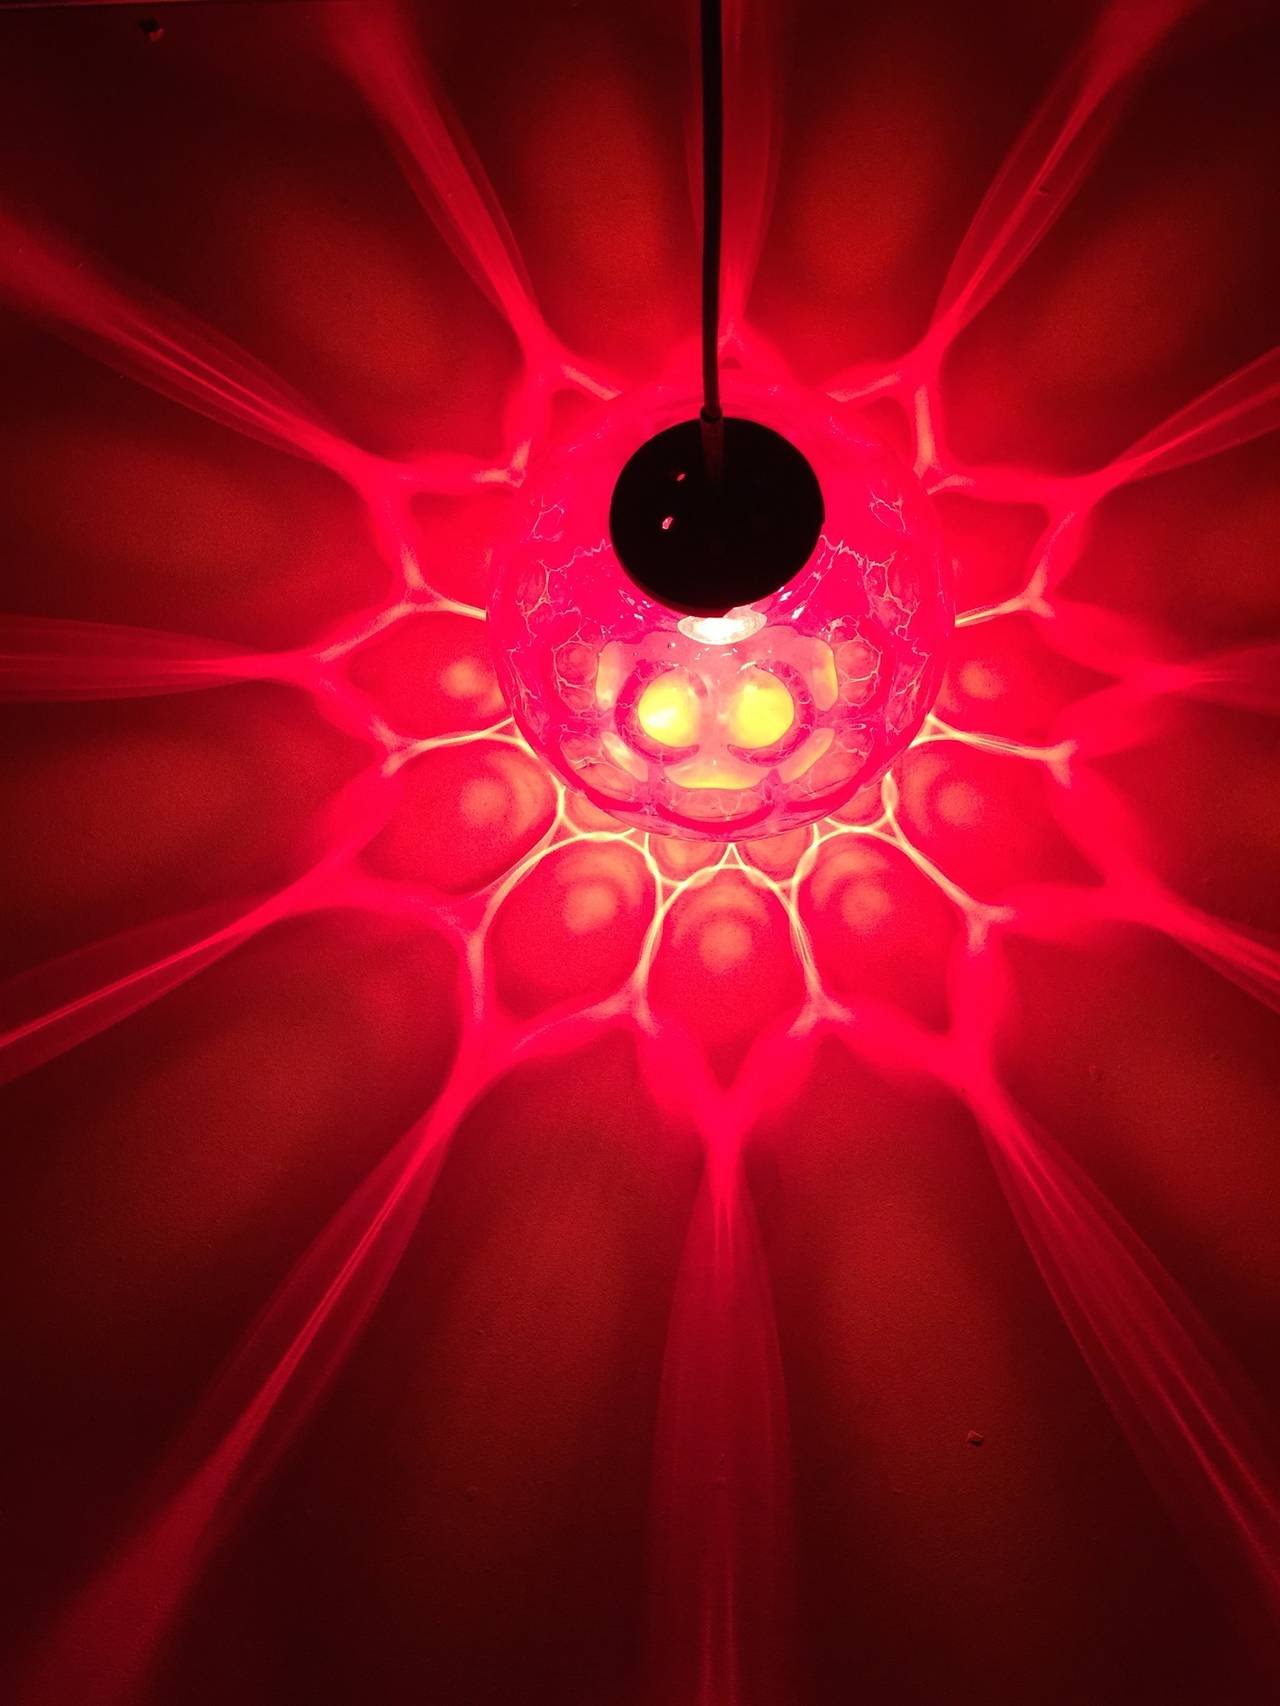 Ce pendentif en verre de cristal rouge de Carl Fagerlund pour Orrefors produit un effet étonnant dans l'obscurité

Le verre taillé à facettes distribue la lumière comme si votre chambre était remplie de rubis rouges étincelants

Le globe est